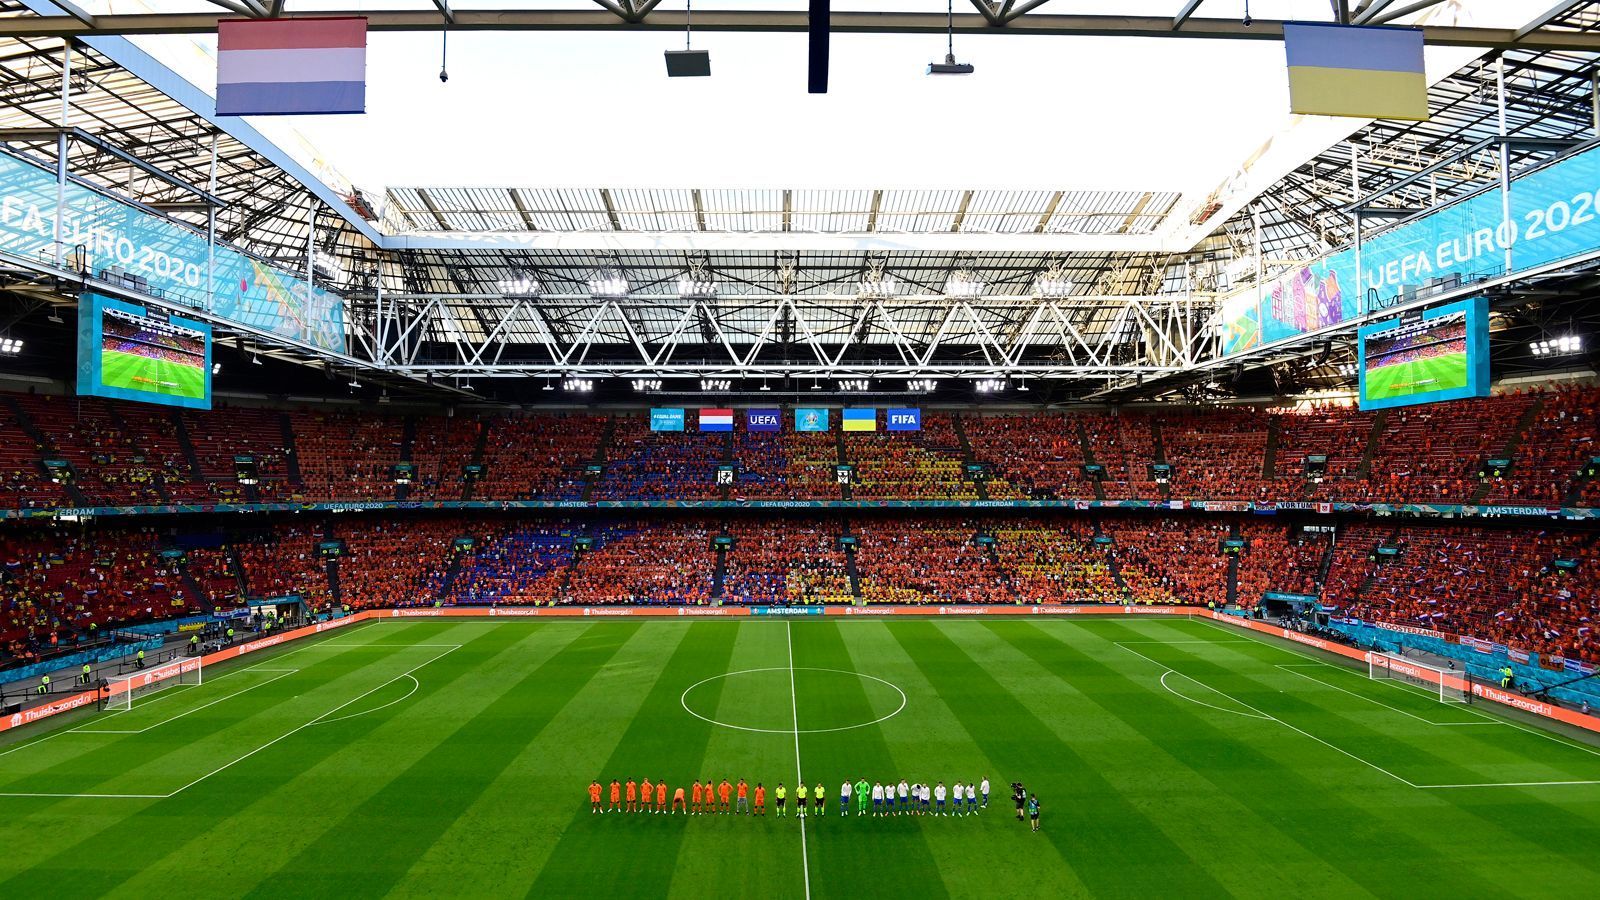 
                <strong>Niederländisches Auftaktspiel in Amsterdam</strong><br>
                In Amsterdams Johan Cruijff ArenA empfingen die Niederländer im letzten Spiel des dritten EM-Tages die Ukraine. 
              